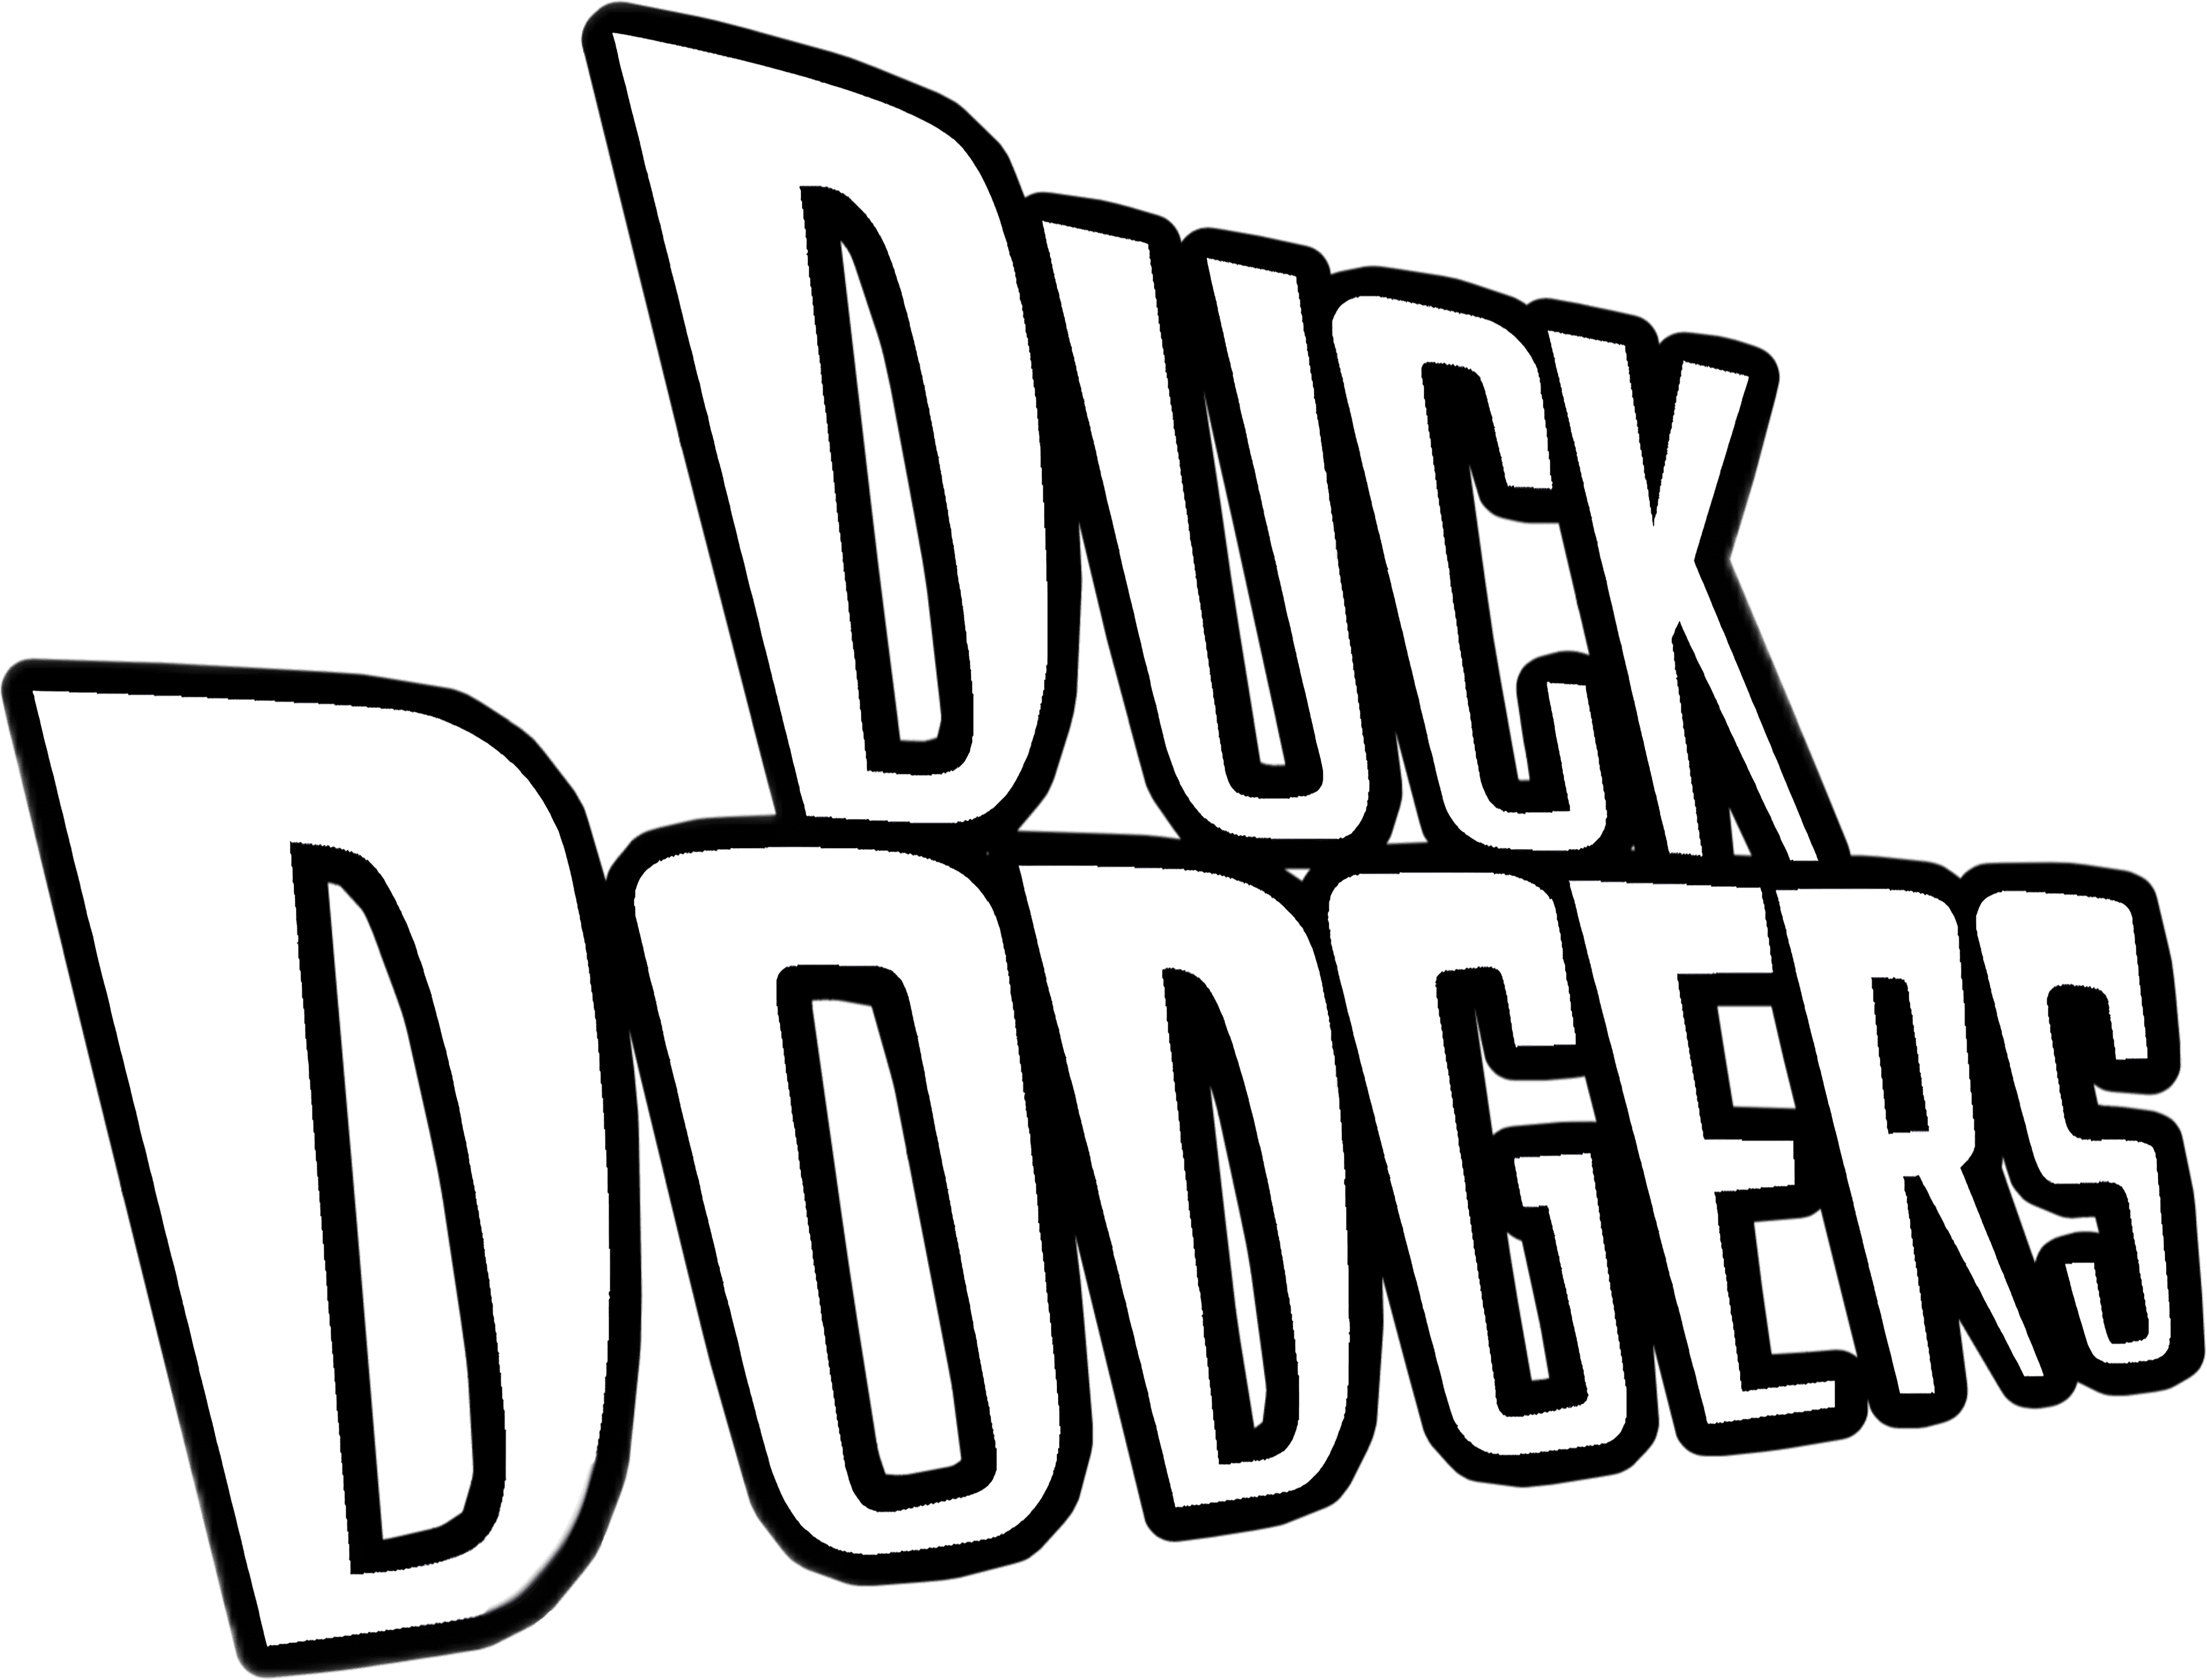 Duck Dodgers logo